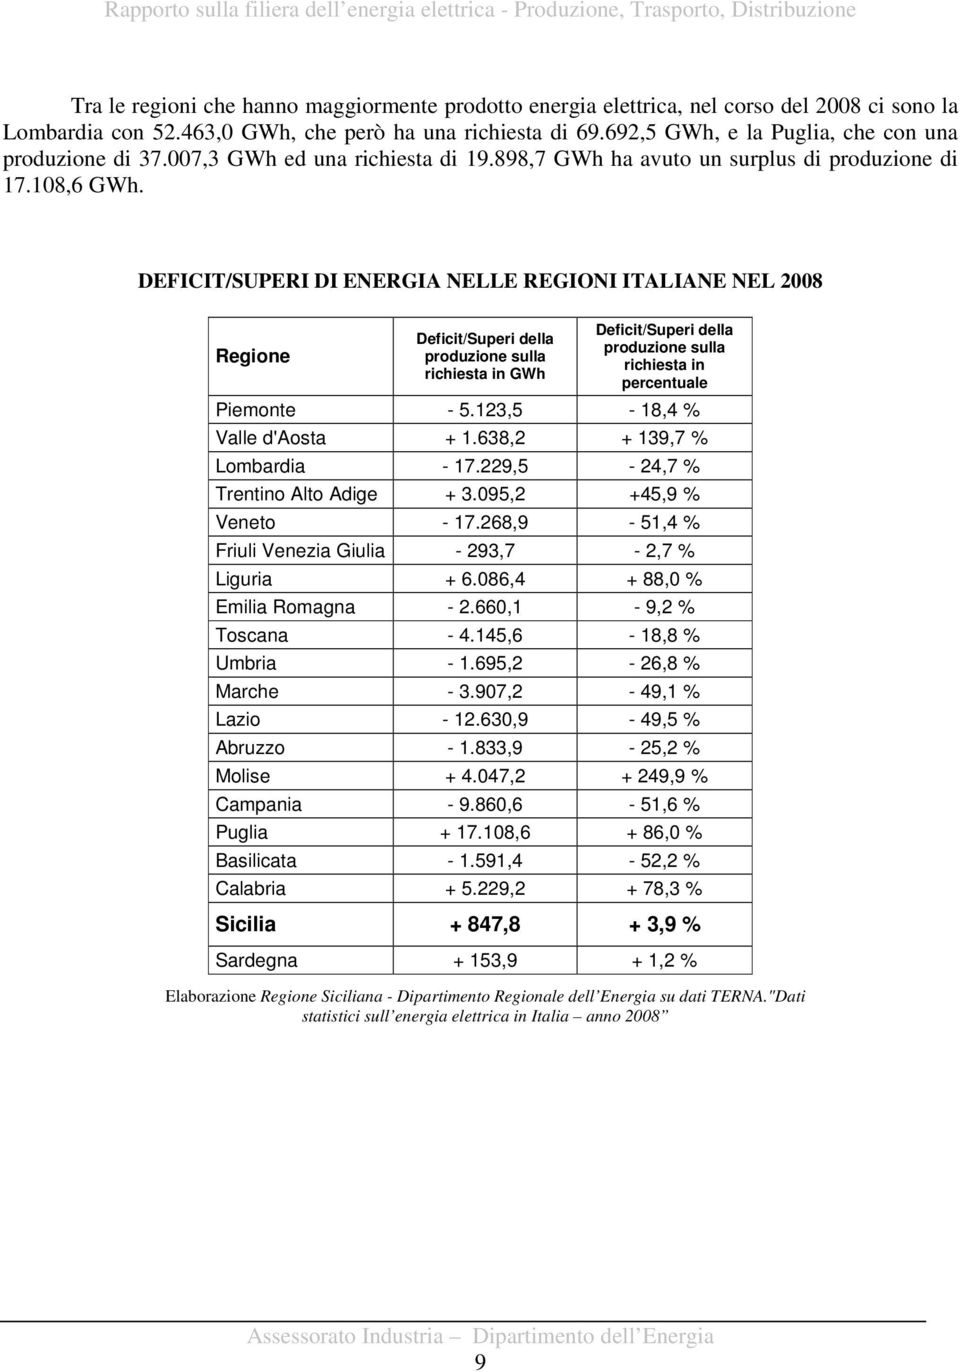 DEFICIT/SUPERI DI ENERGIA NELLE REGIONI ITALIANE NEL 2008 Regione Deficit/Superi della produzione sulla richiesta in GWh Deficit/Superi della produzione sulla richiesta in percentuale Piemonte - 5.